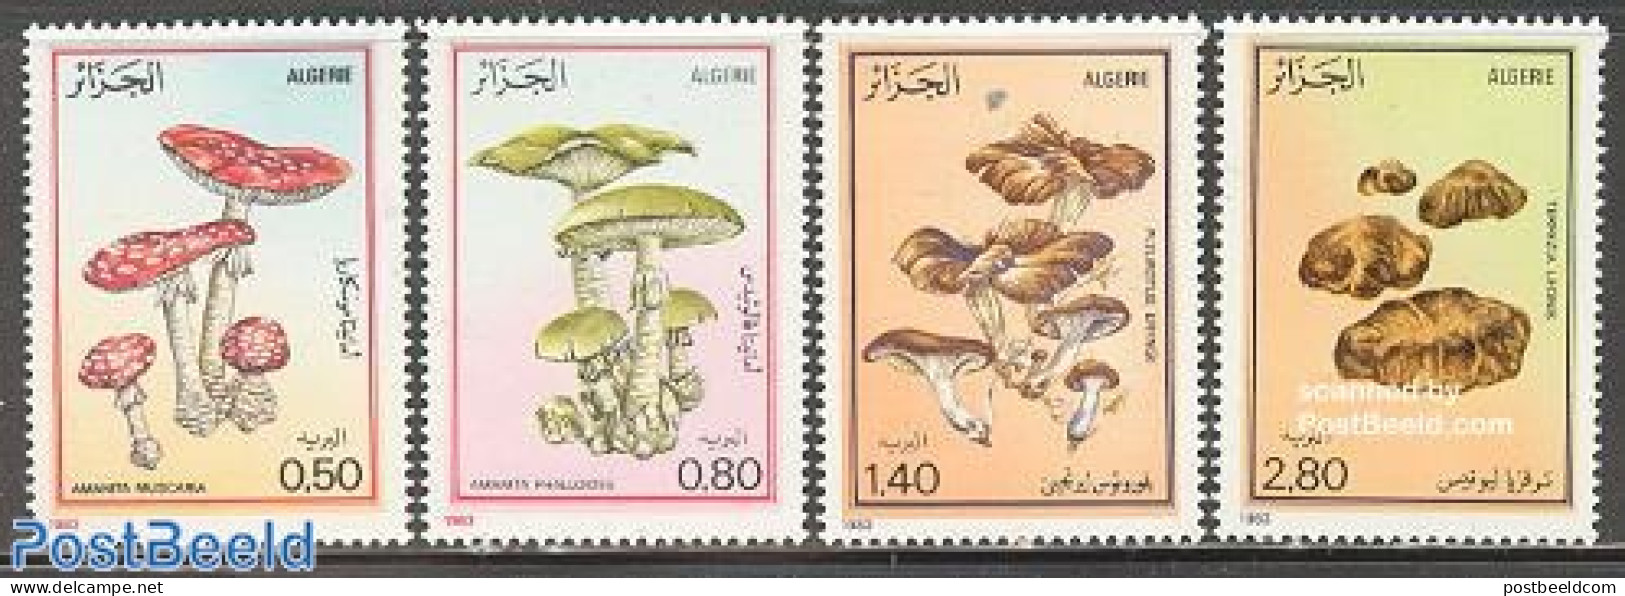 Algeria 1983 Mushrooms 4v, Mint NH, Nature - Mushrooms - Unused Stamps